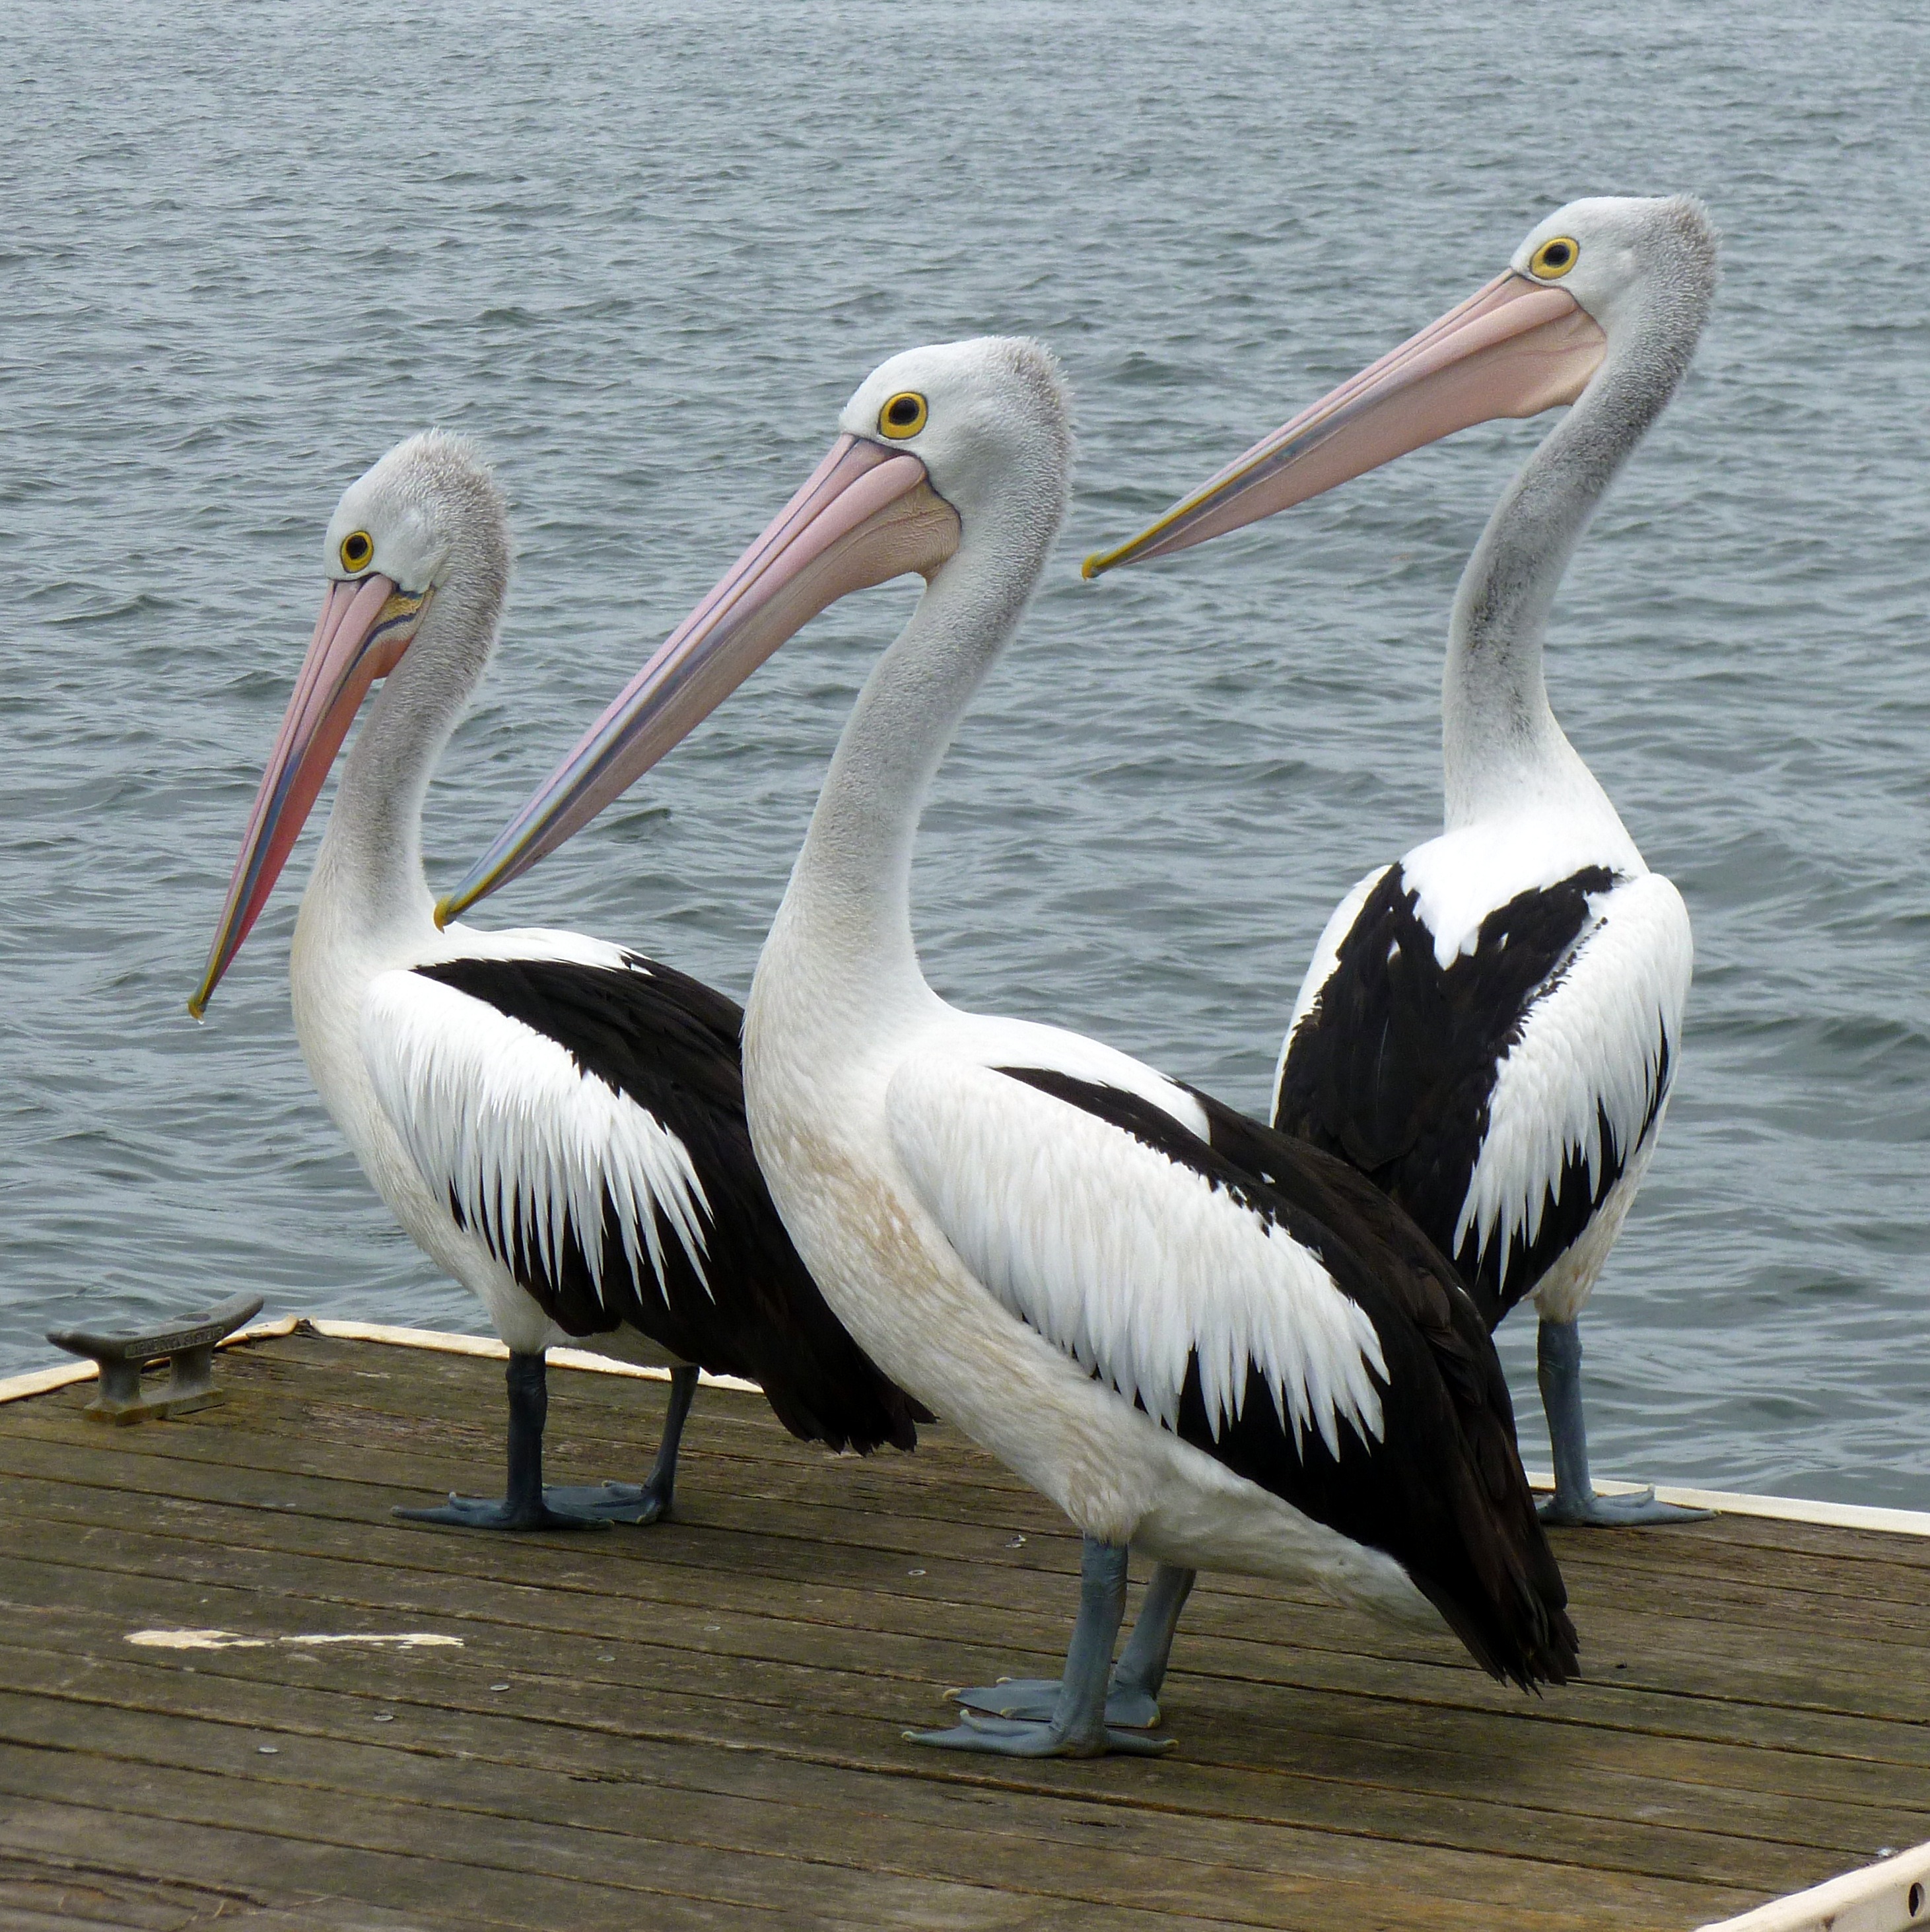 Free Images : sea, nature, ocean, bird, dock, wing, pelican, seabird ...